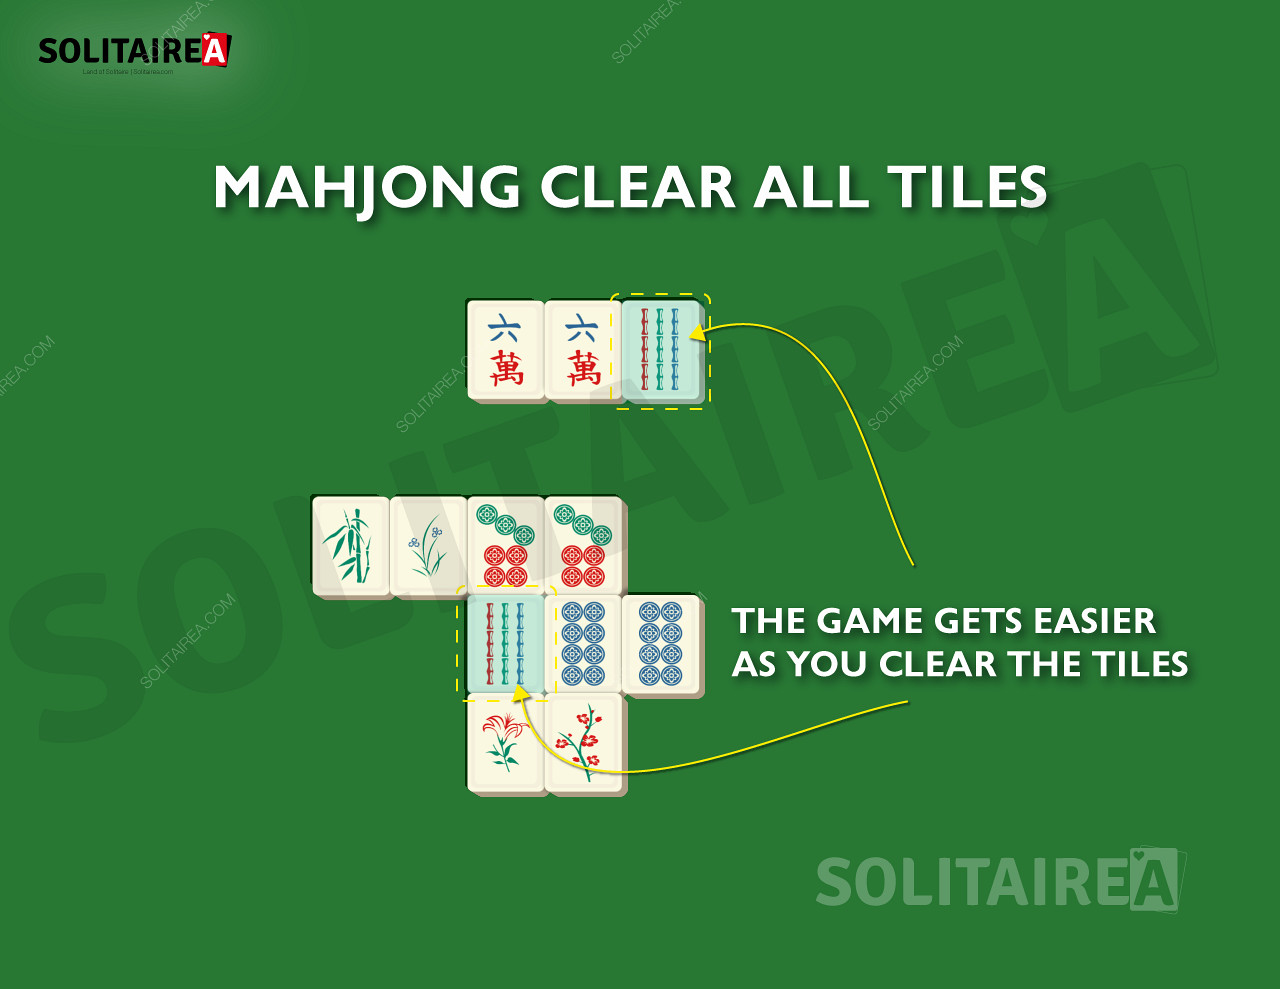 A Mahjong Solitaire játékban a játék előrehaladtával egyre kevesebb lapot kell eltüntetni.